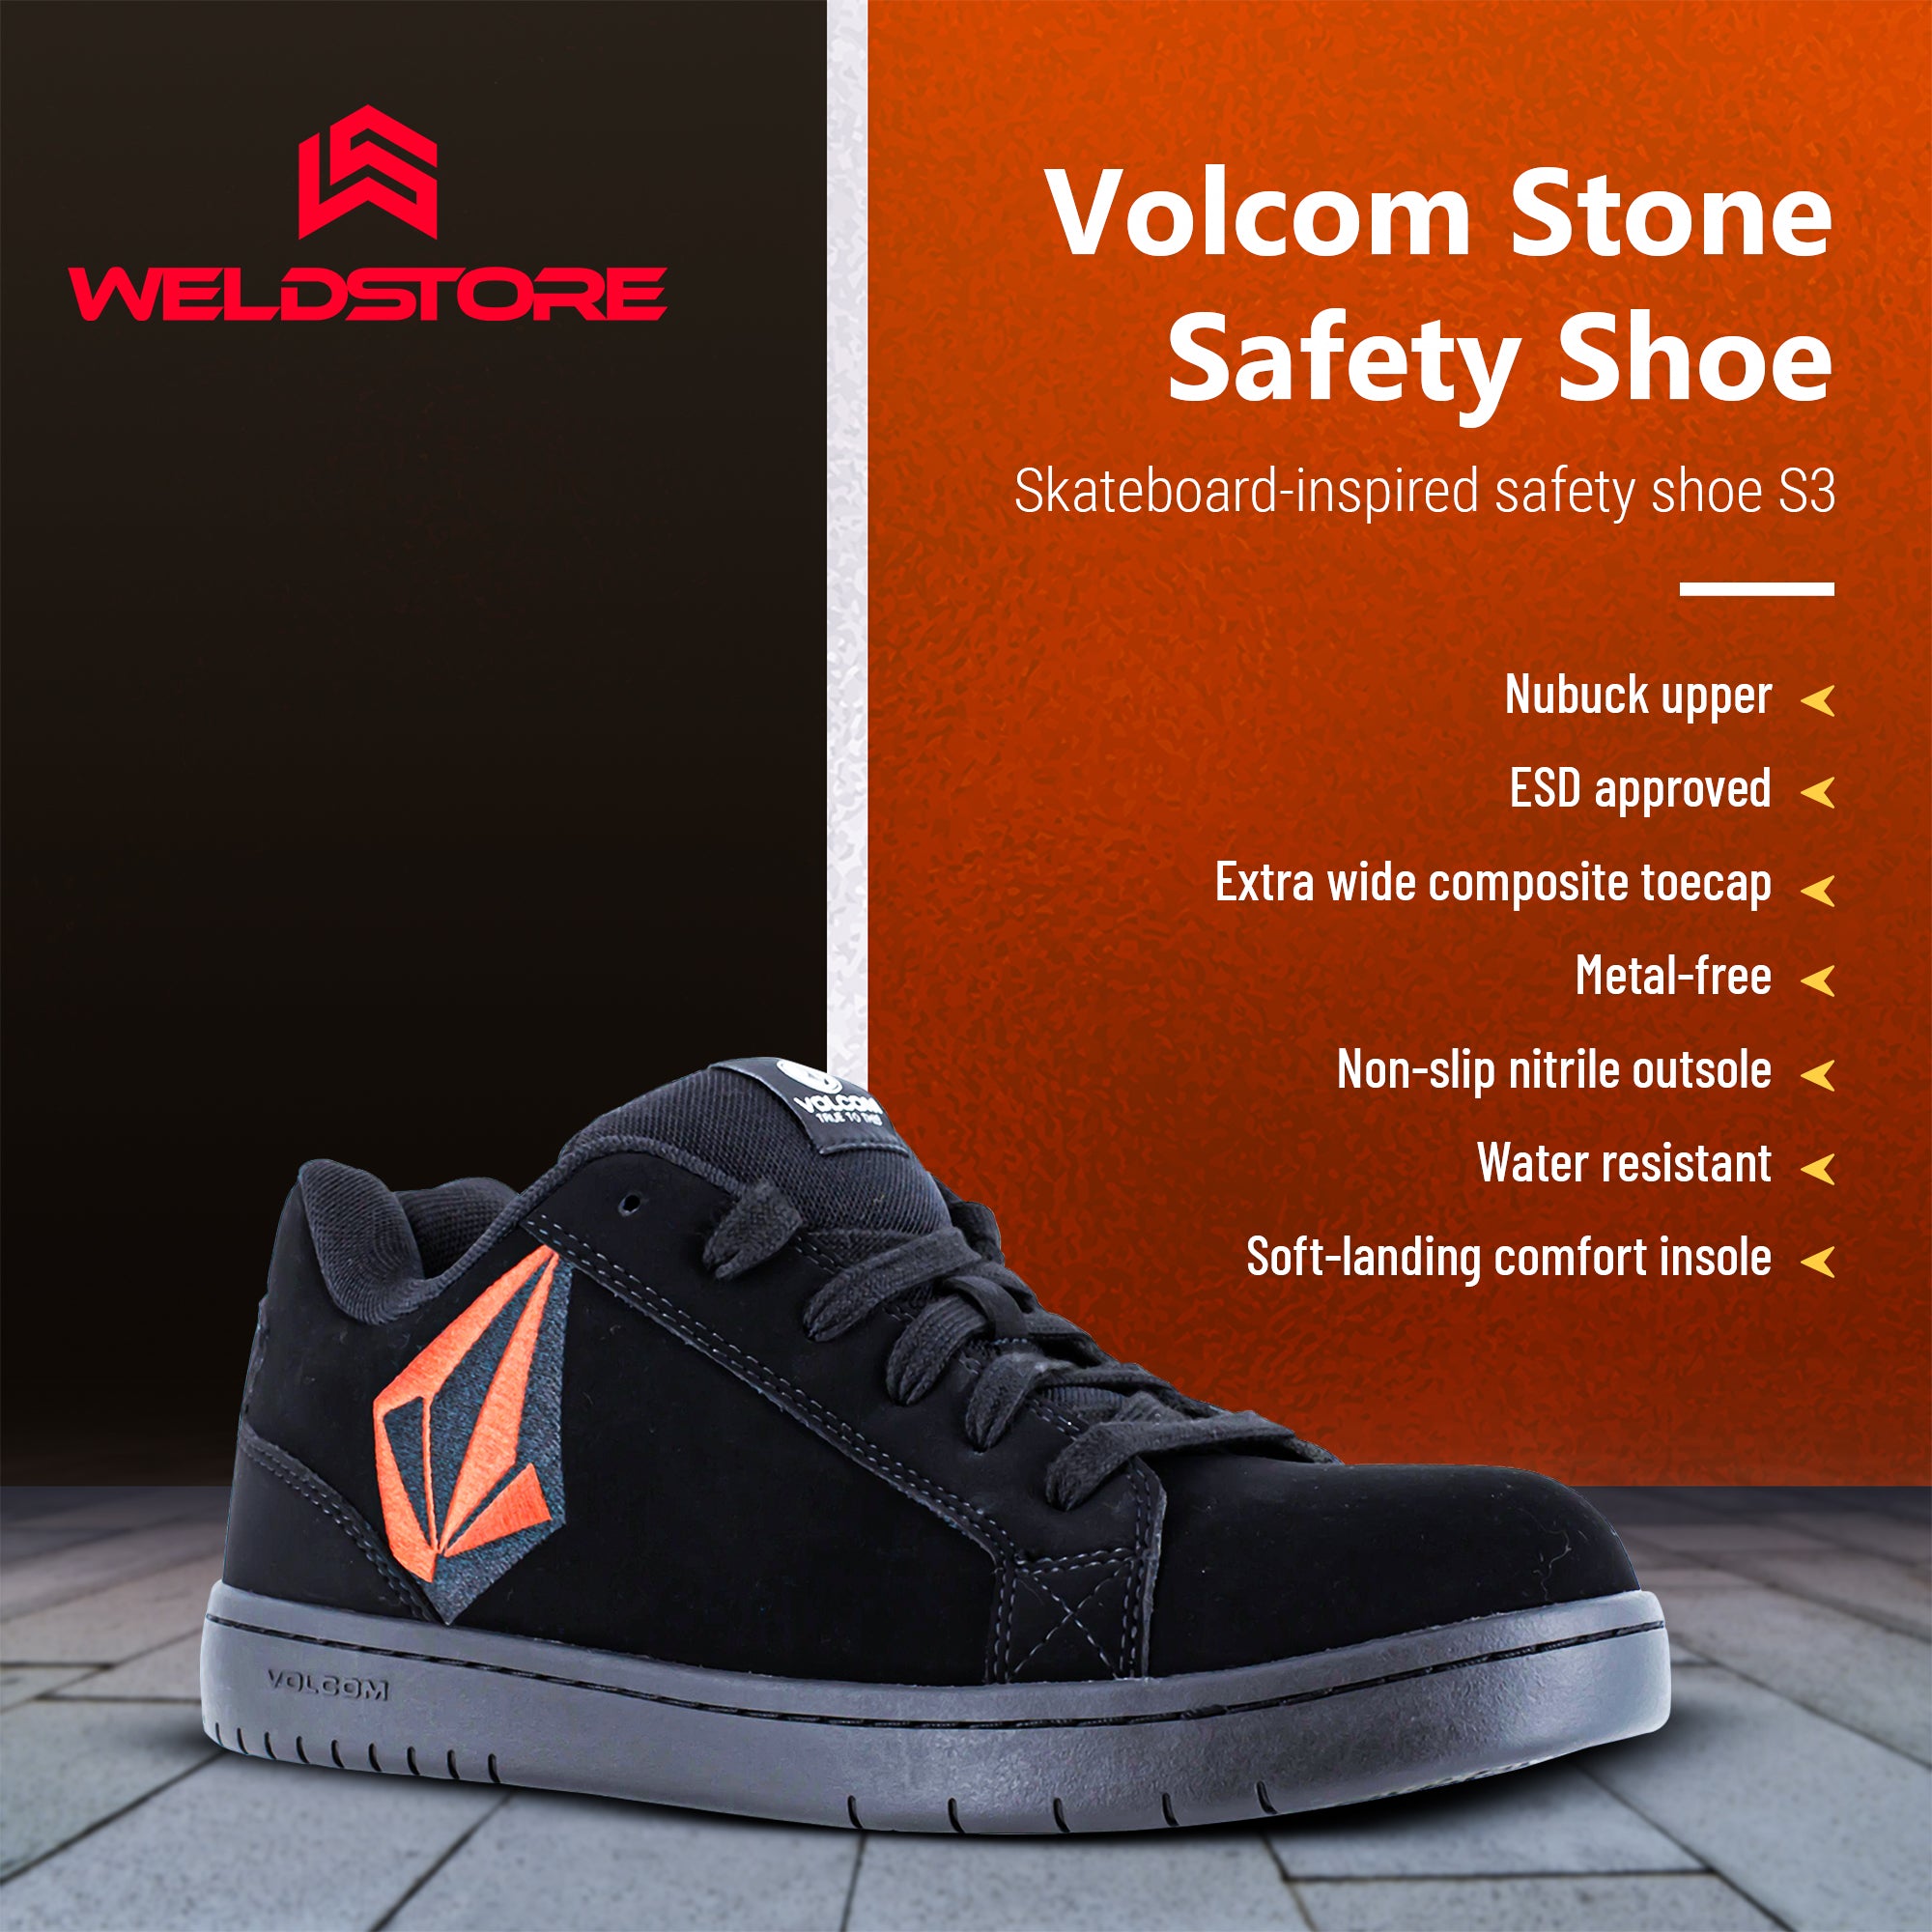 Safety shoe Volcom Stone